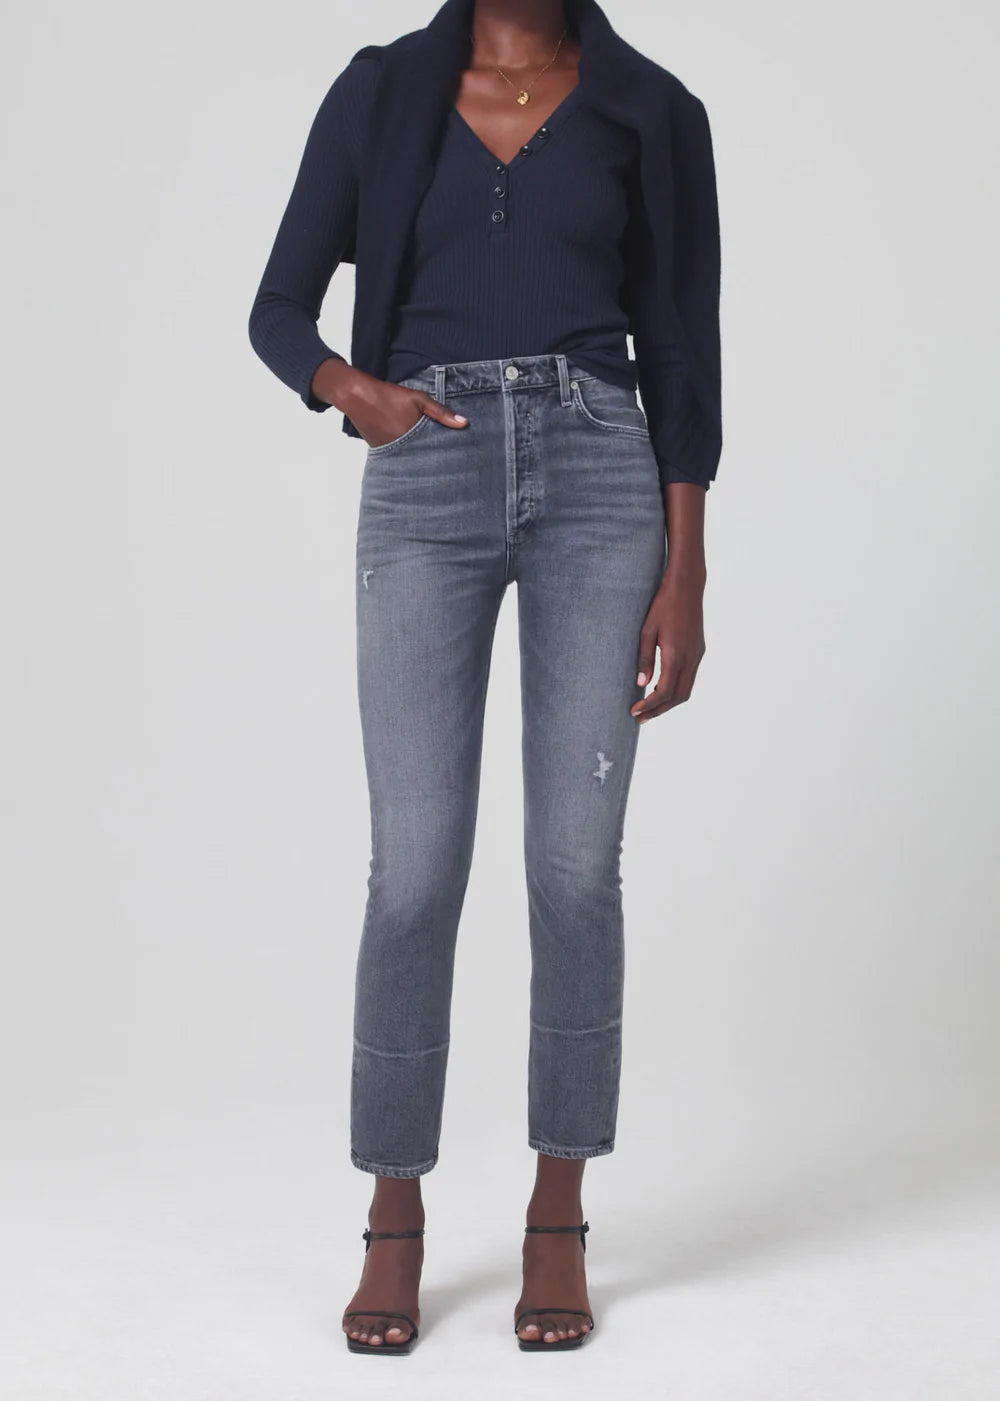 Citizen of Humanity Jolene high-rise slim-leg denim jeans women's clothing